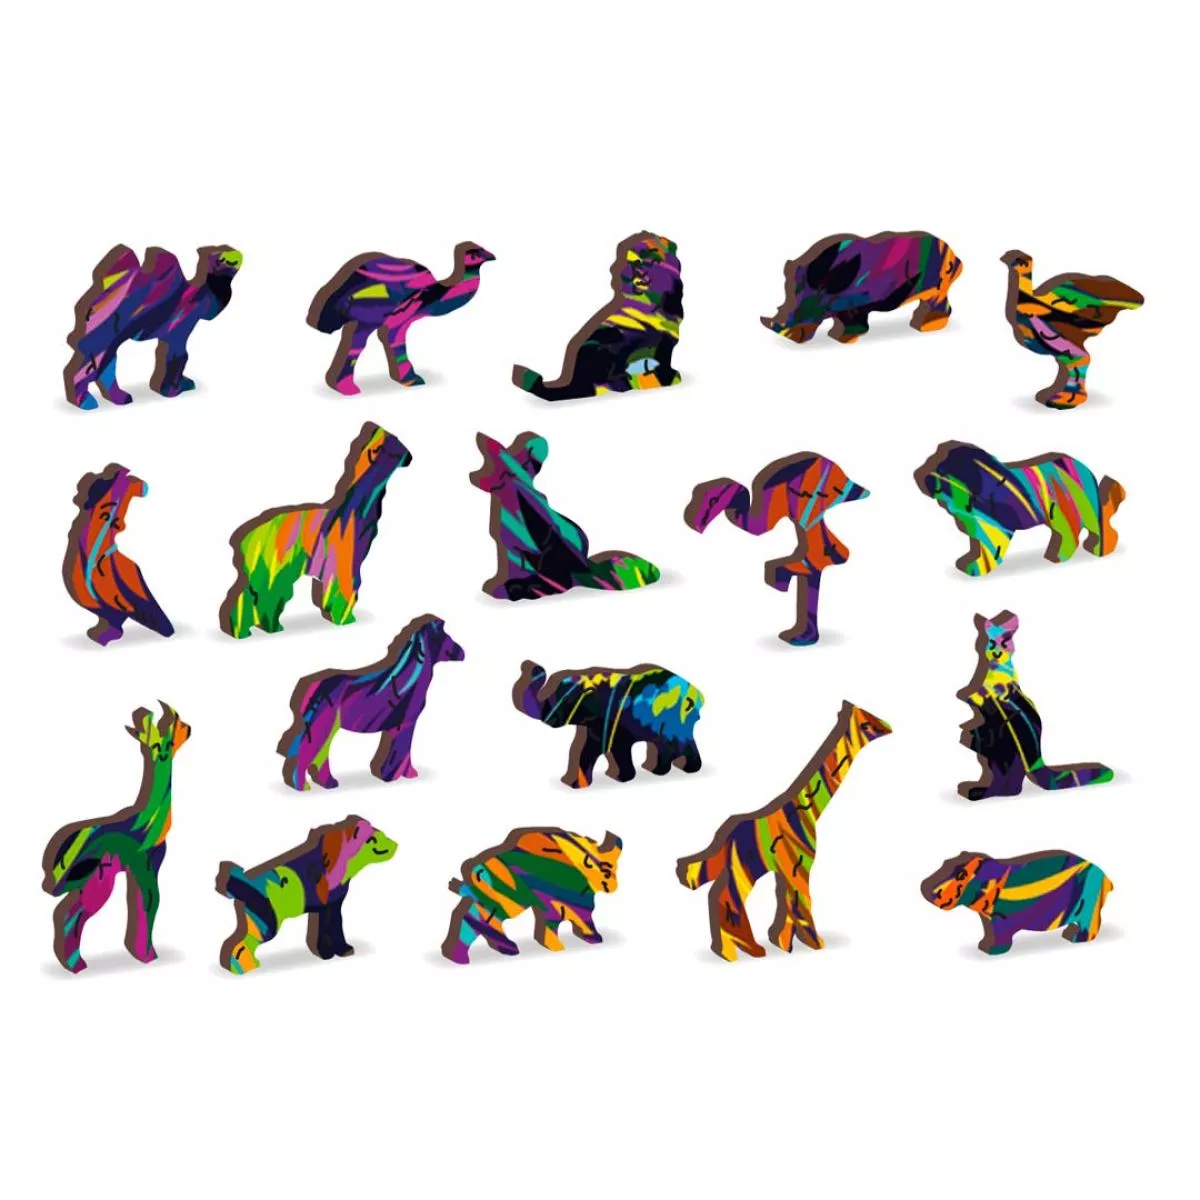 Farbenfrohes Holz-Puzzle "Regenbogen-Katze" – 274 Teile in 34 Formen